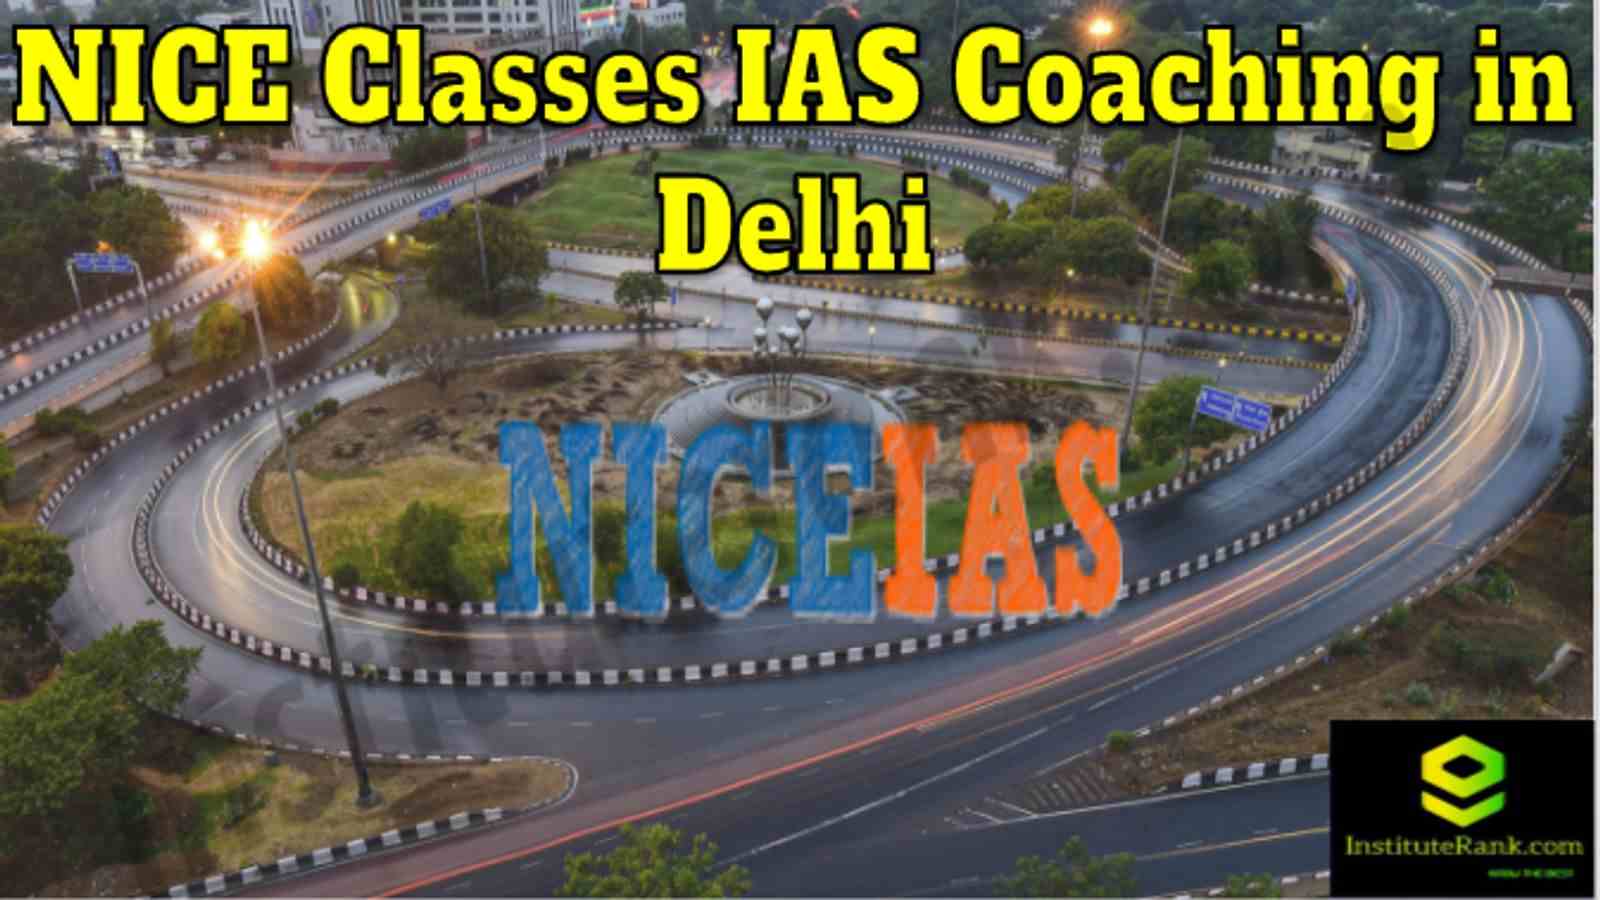 NICE Classes IAS Coaching in Delhi